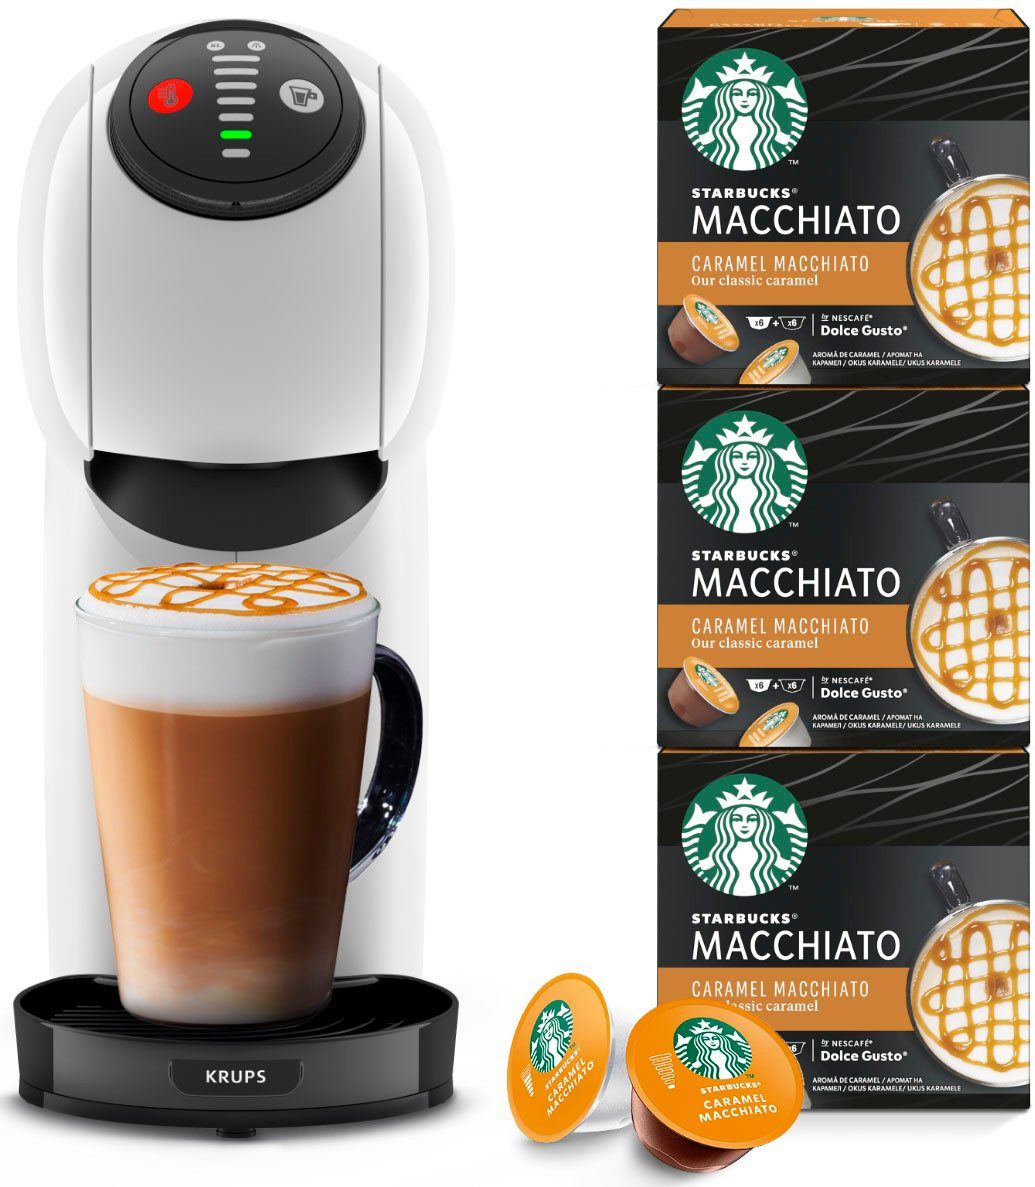 NESCAFɮ Dolce Gusto® Kapselmaschine KP2401 Genio S, inkl. 3 Pakete Starbucks Caramel Macchiato im Wert von UVP 16,47€